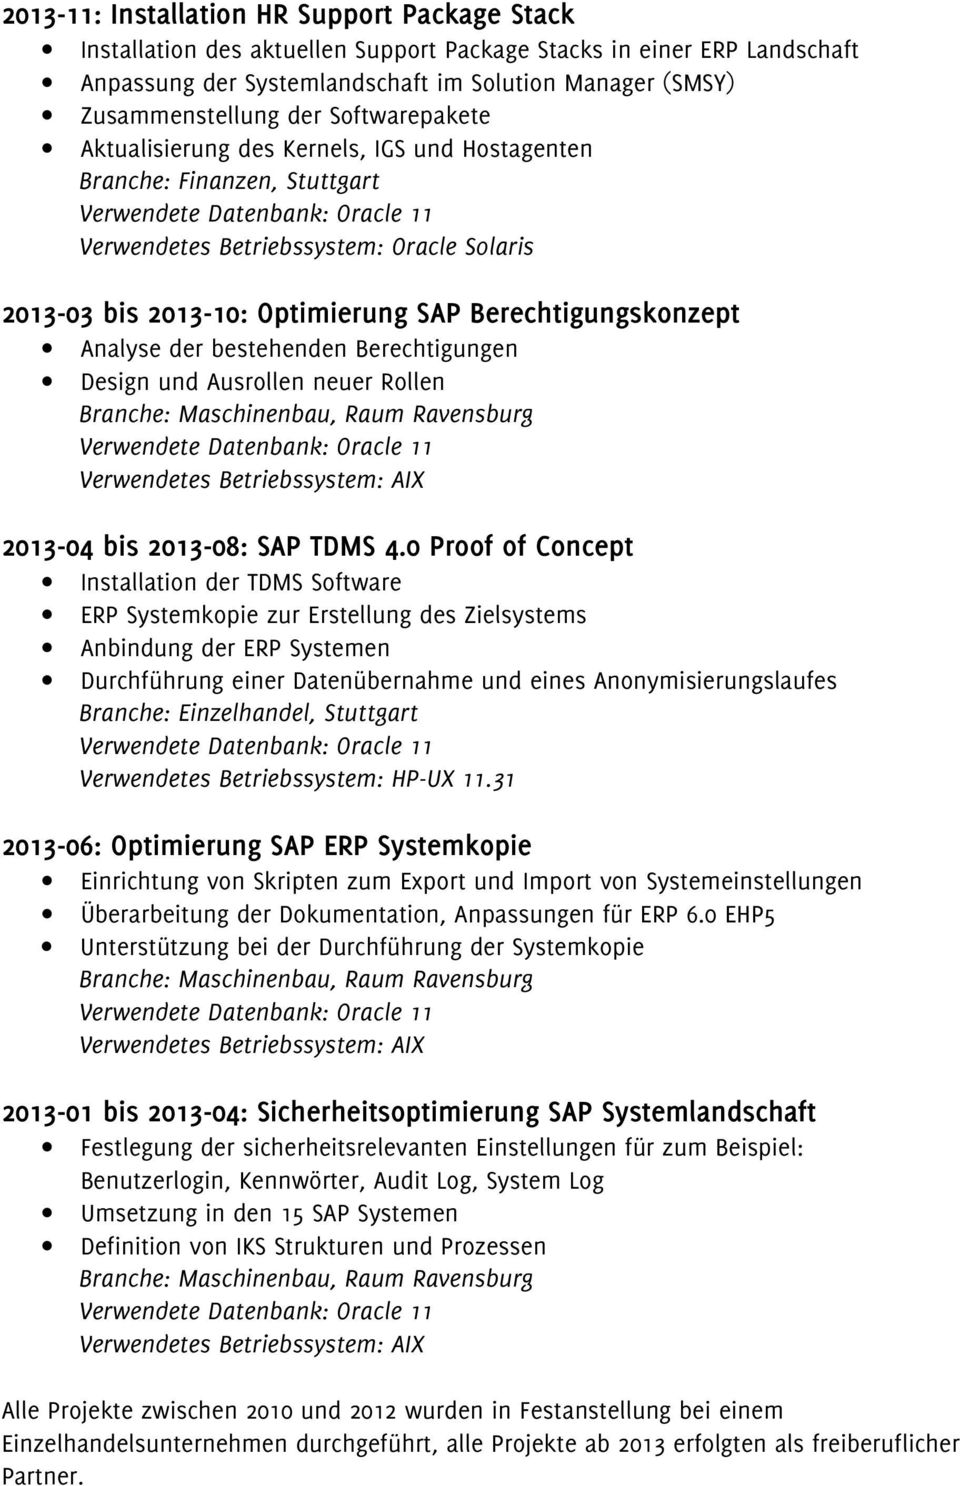 Analyse der bestehenden Berechtigungen Design und Ausrollen neuer Rollen Branche: Maschinenbau, Raum Ravensburg Verwendetes Betriebssystem: AIX 2013-04 bis 2013-08: SAP TDMS 4.